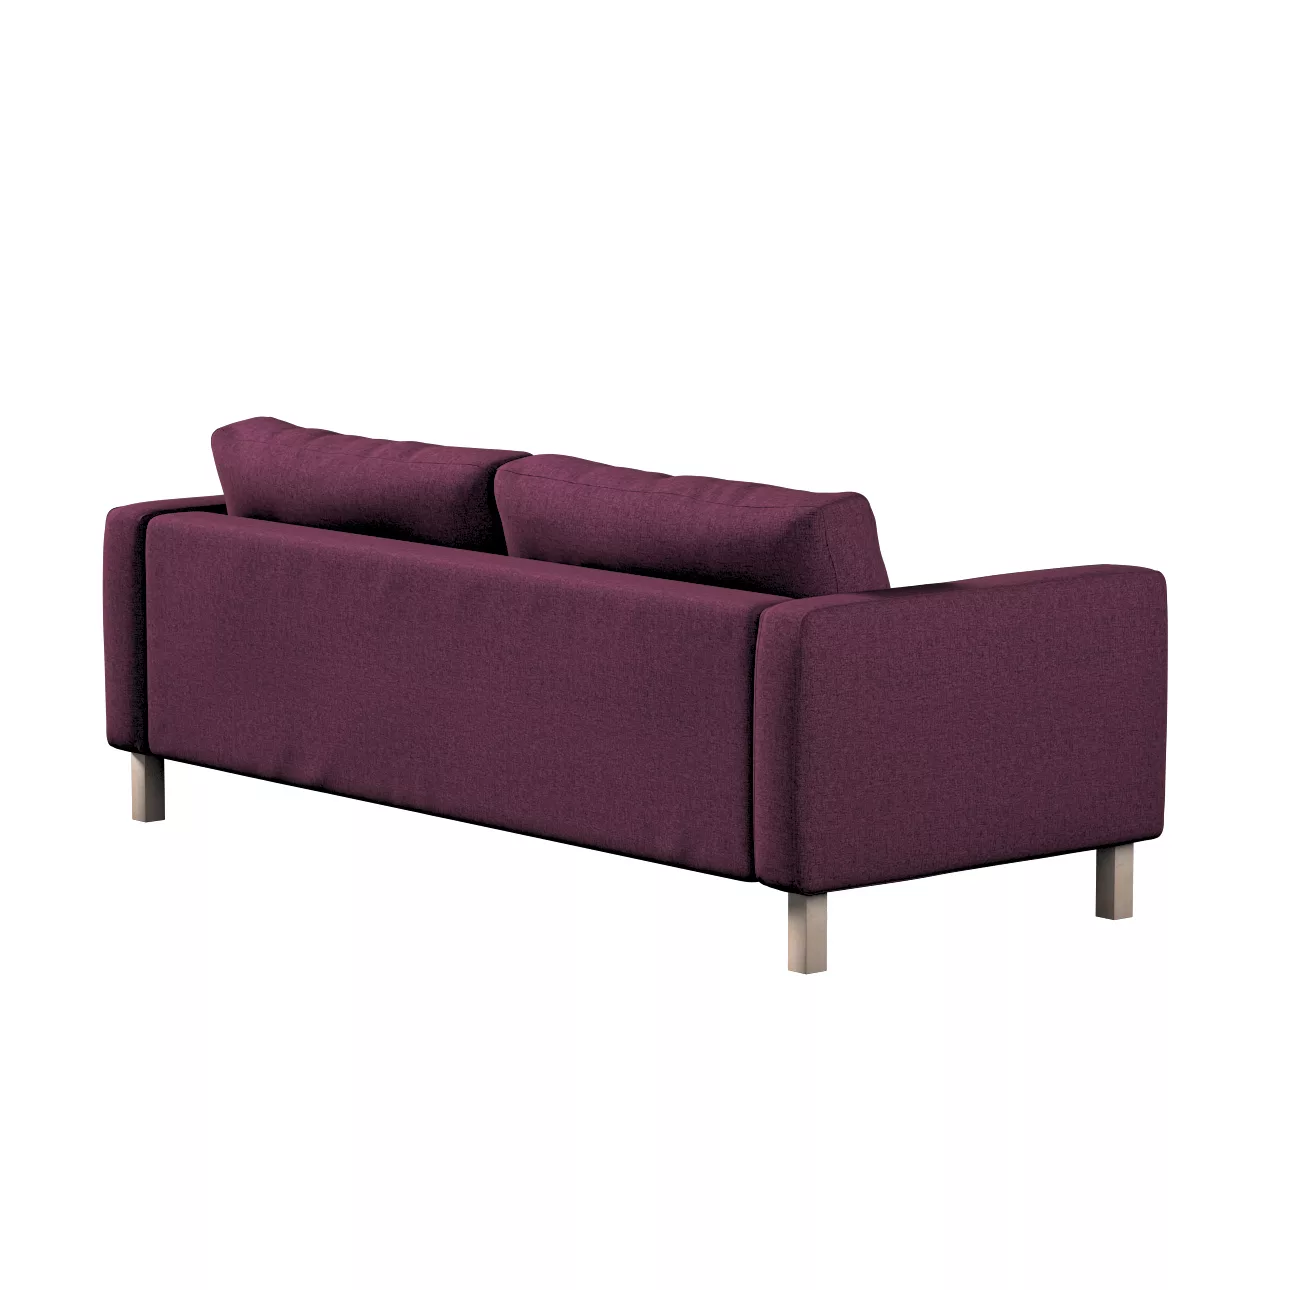 Bezug für Karlstad 3-Sitzer Sofa nicht ausklappbar, kurz, pflaumenviolett, günstig online kaufen